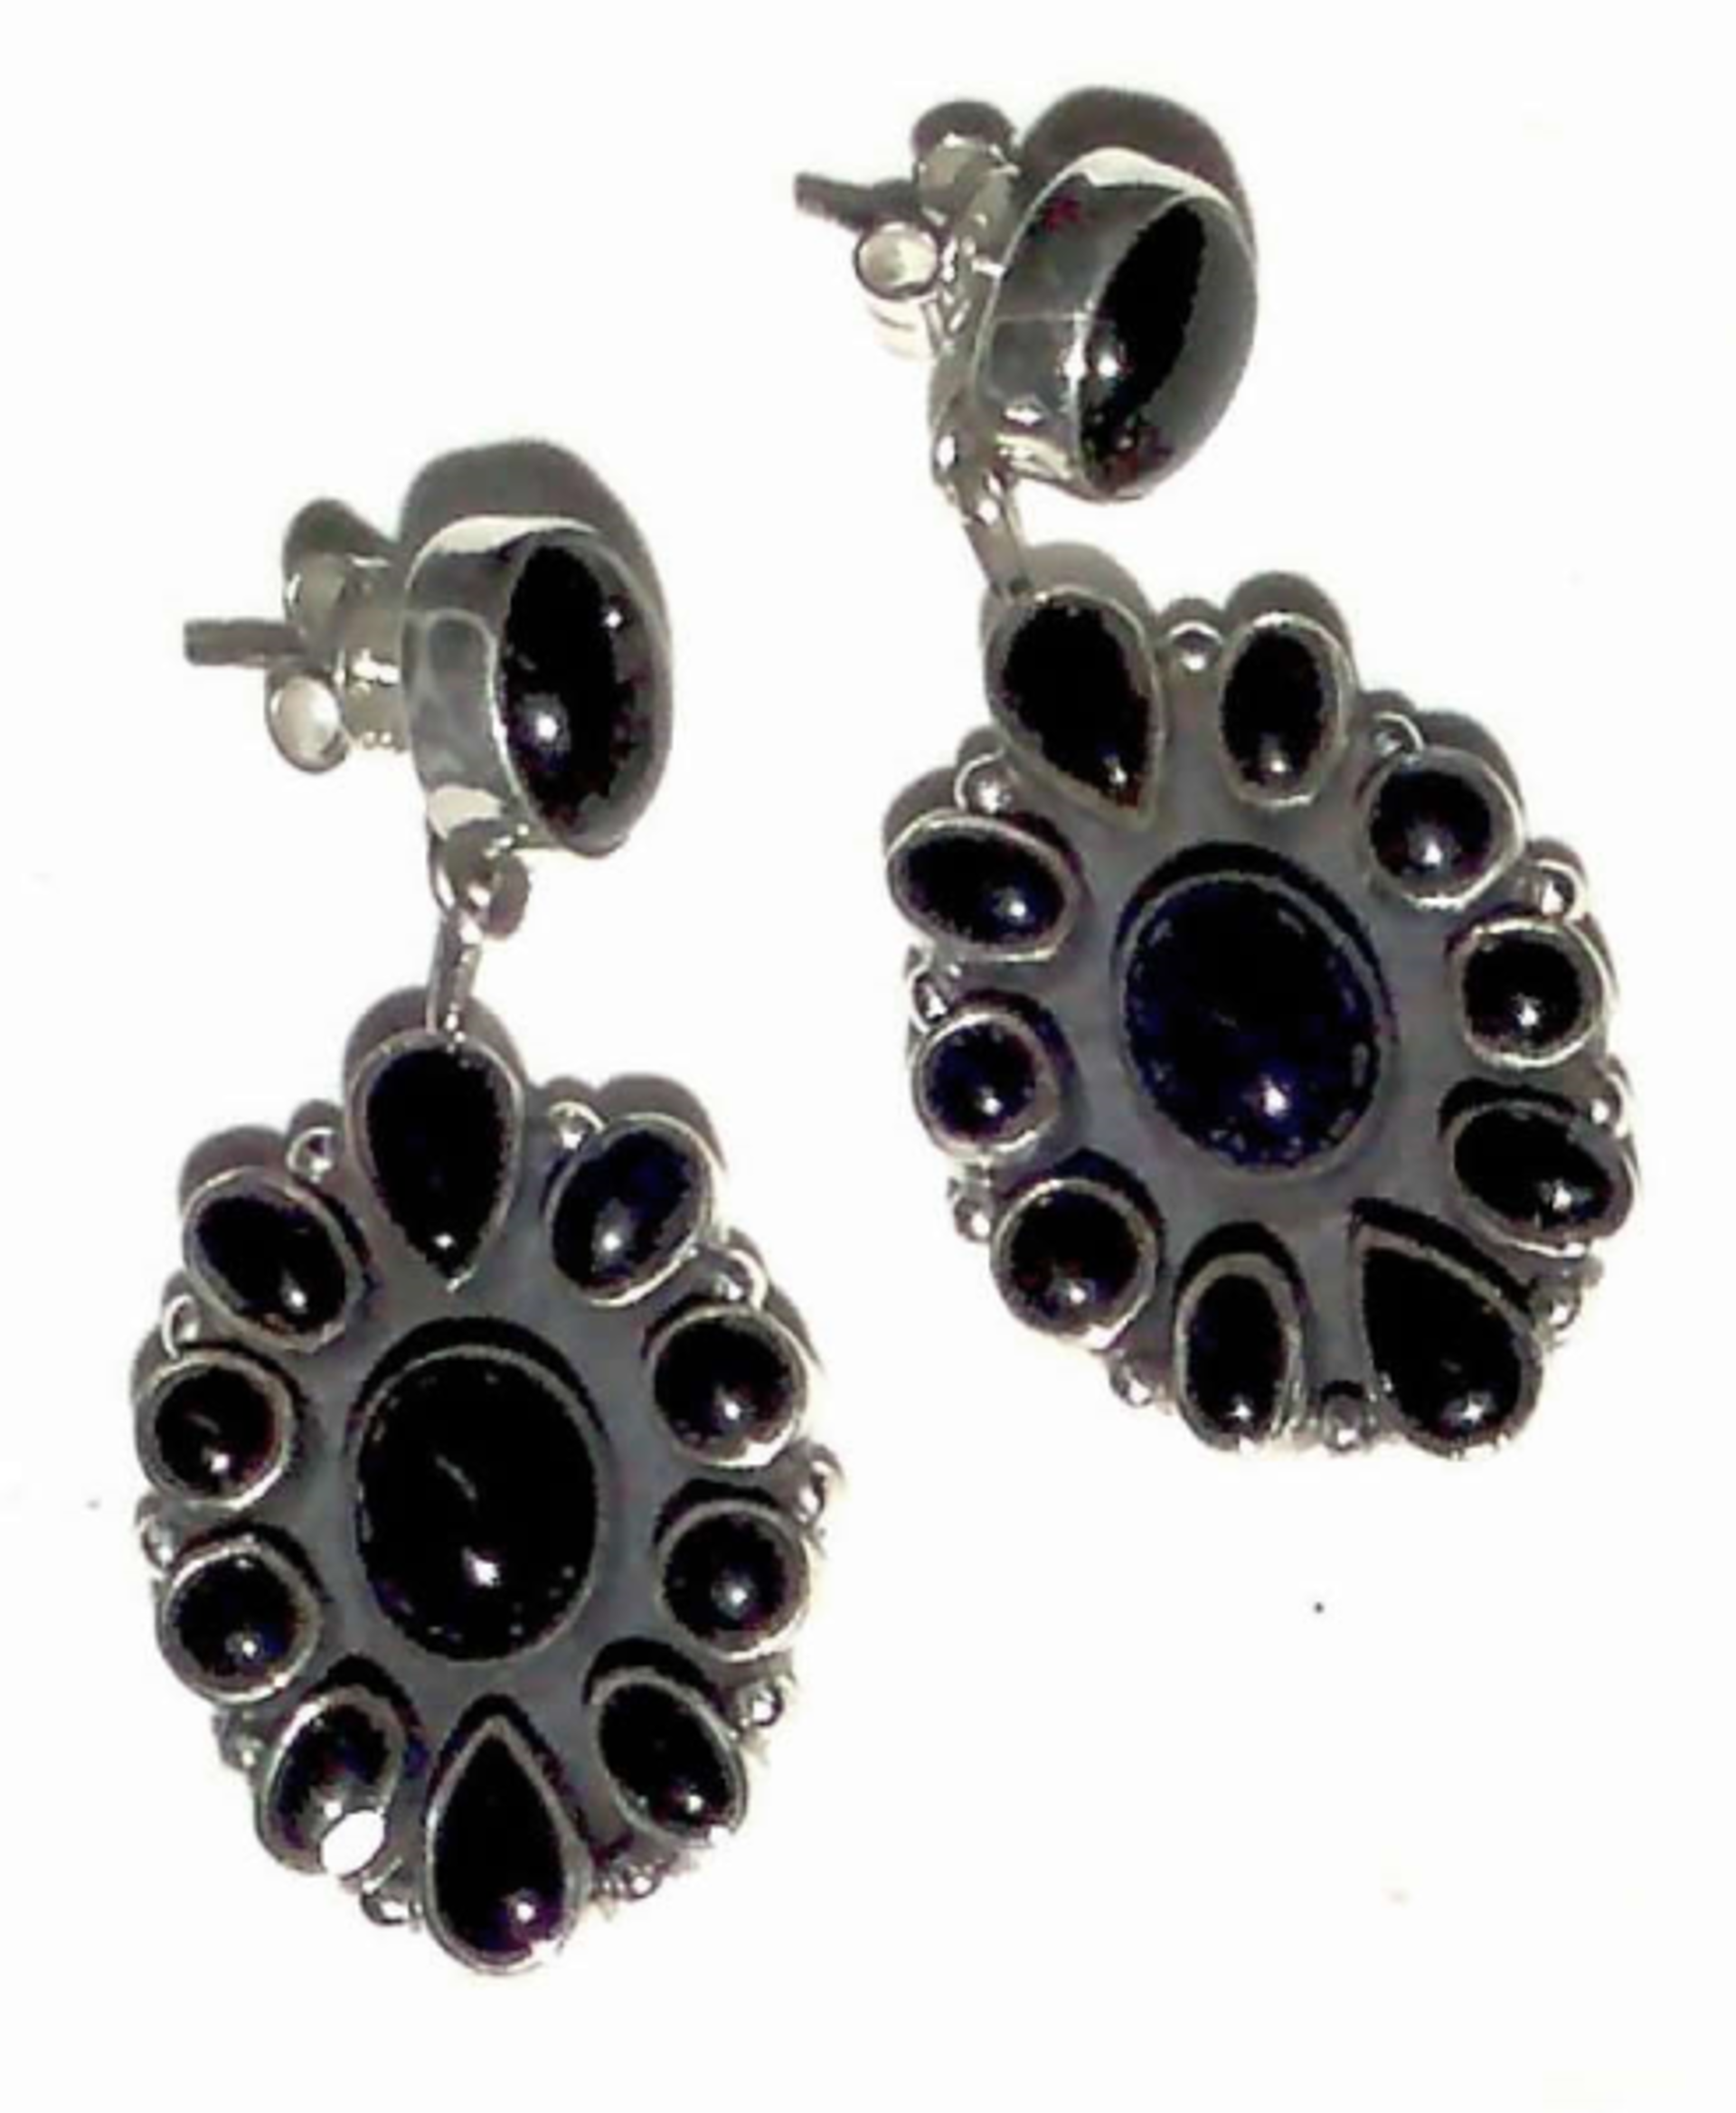 Earrings - Onyx Flower set in Sterling Silver by Dan Dodson